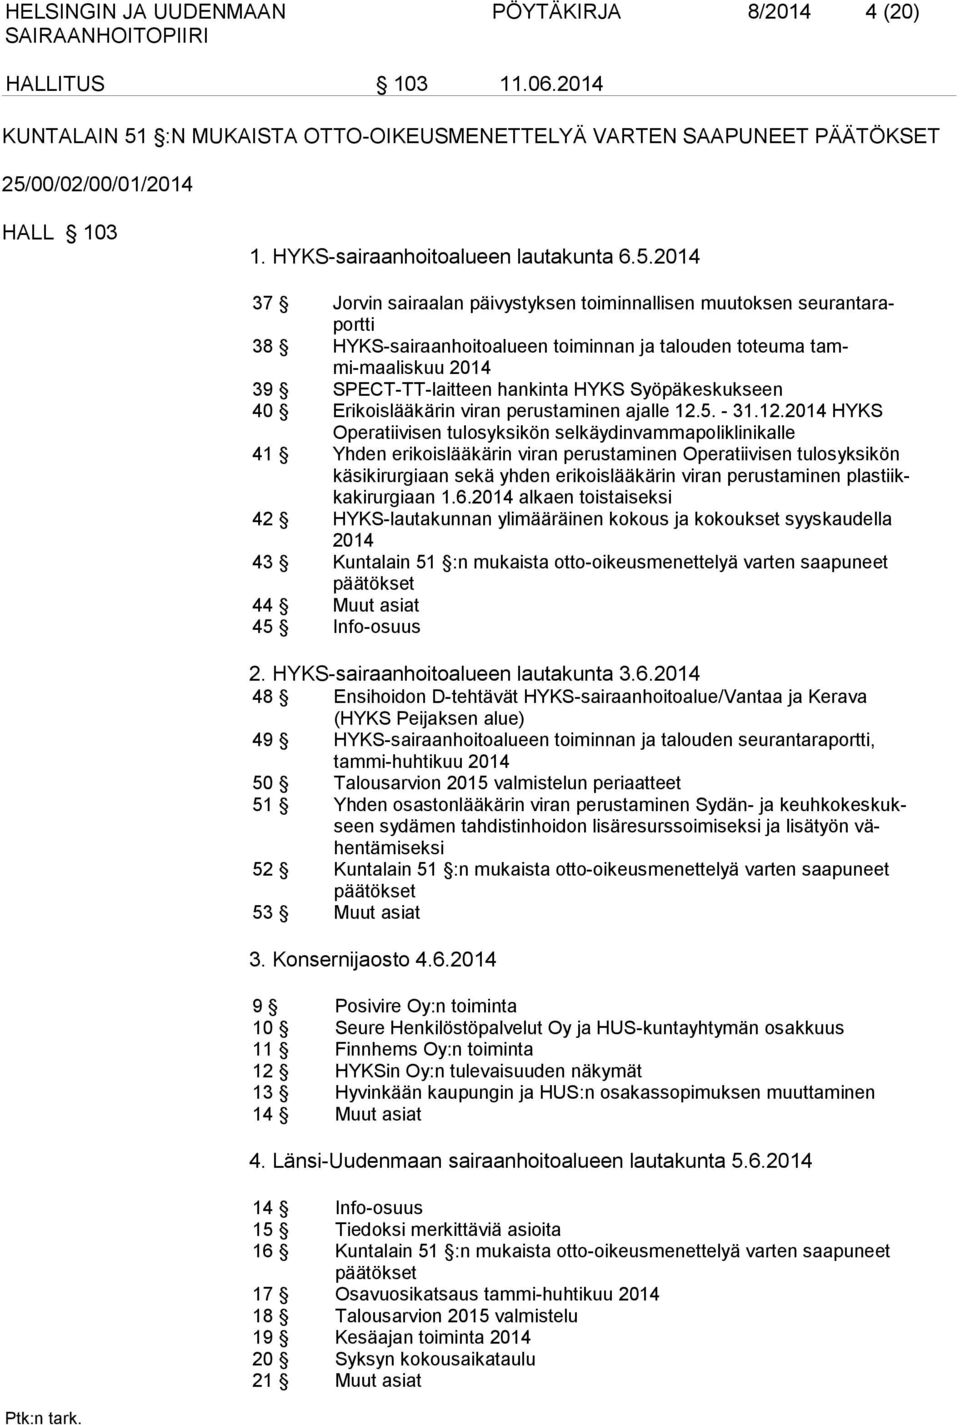 2014 37 Jorvin sairaalan päivystyksen toiminnallisen muutoksen seurantaraportti 38 HYKS-sairaanhoitoalueen toiminnan ja talouden toteuma tammi-maaliskuu 2014 39 SPECT-TT-laitteen hankinta HYKS